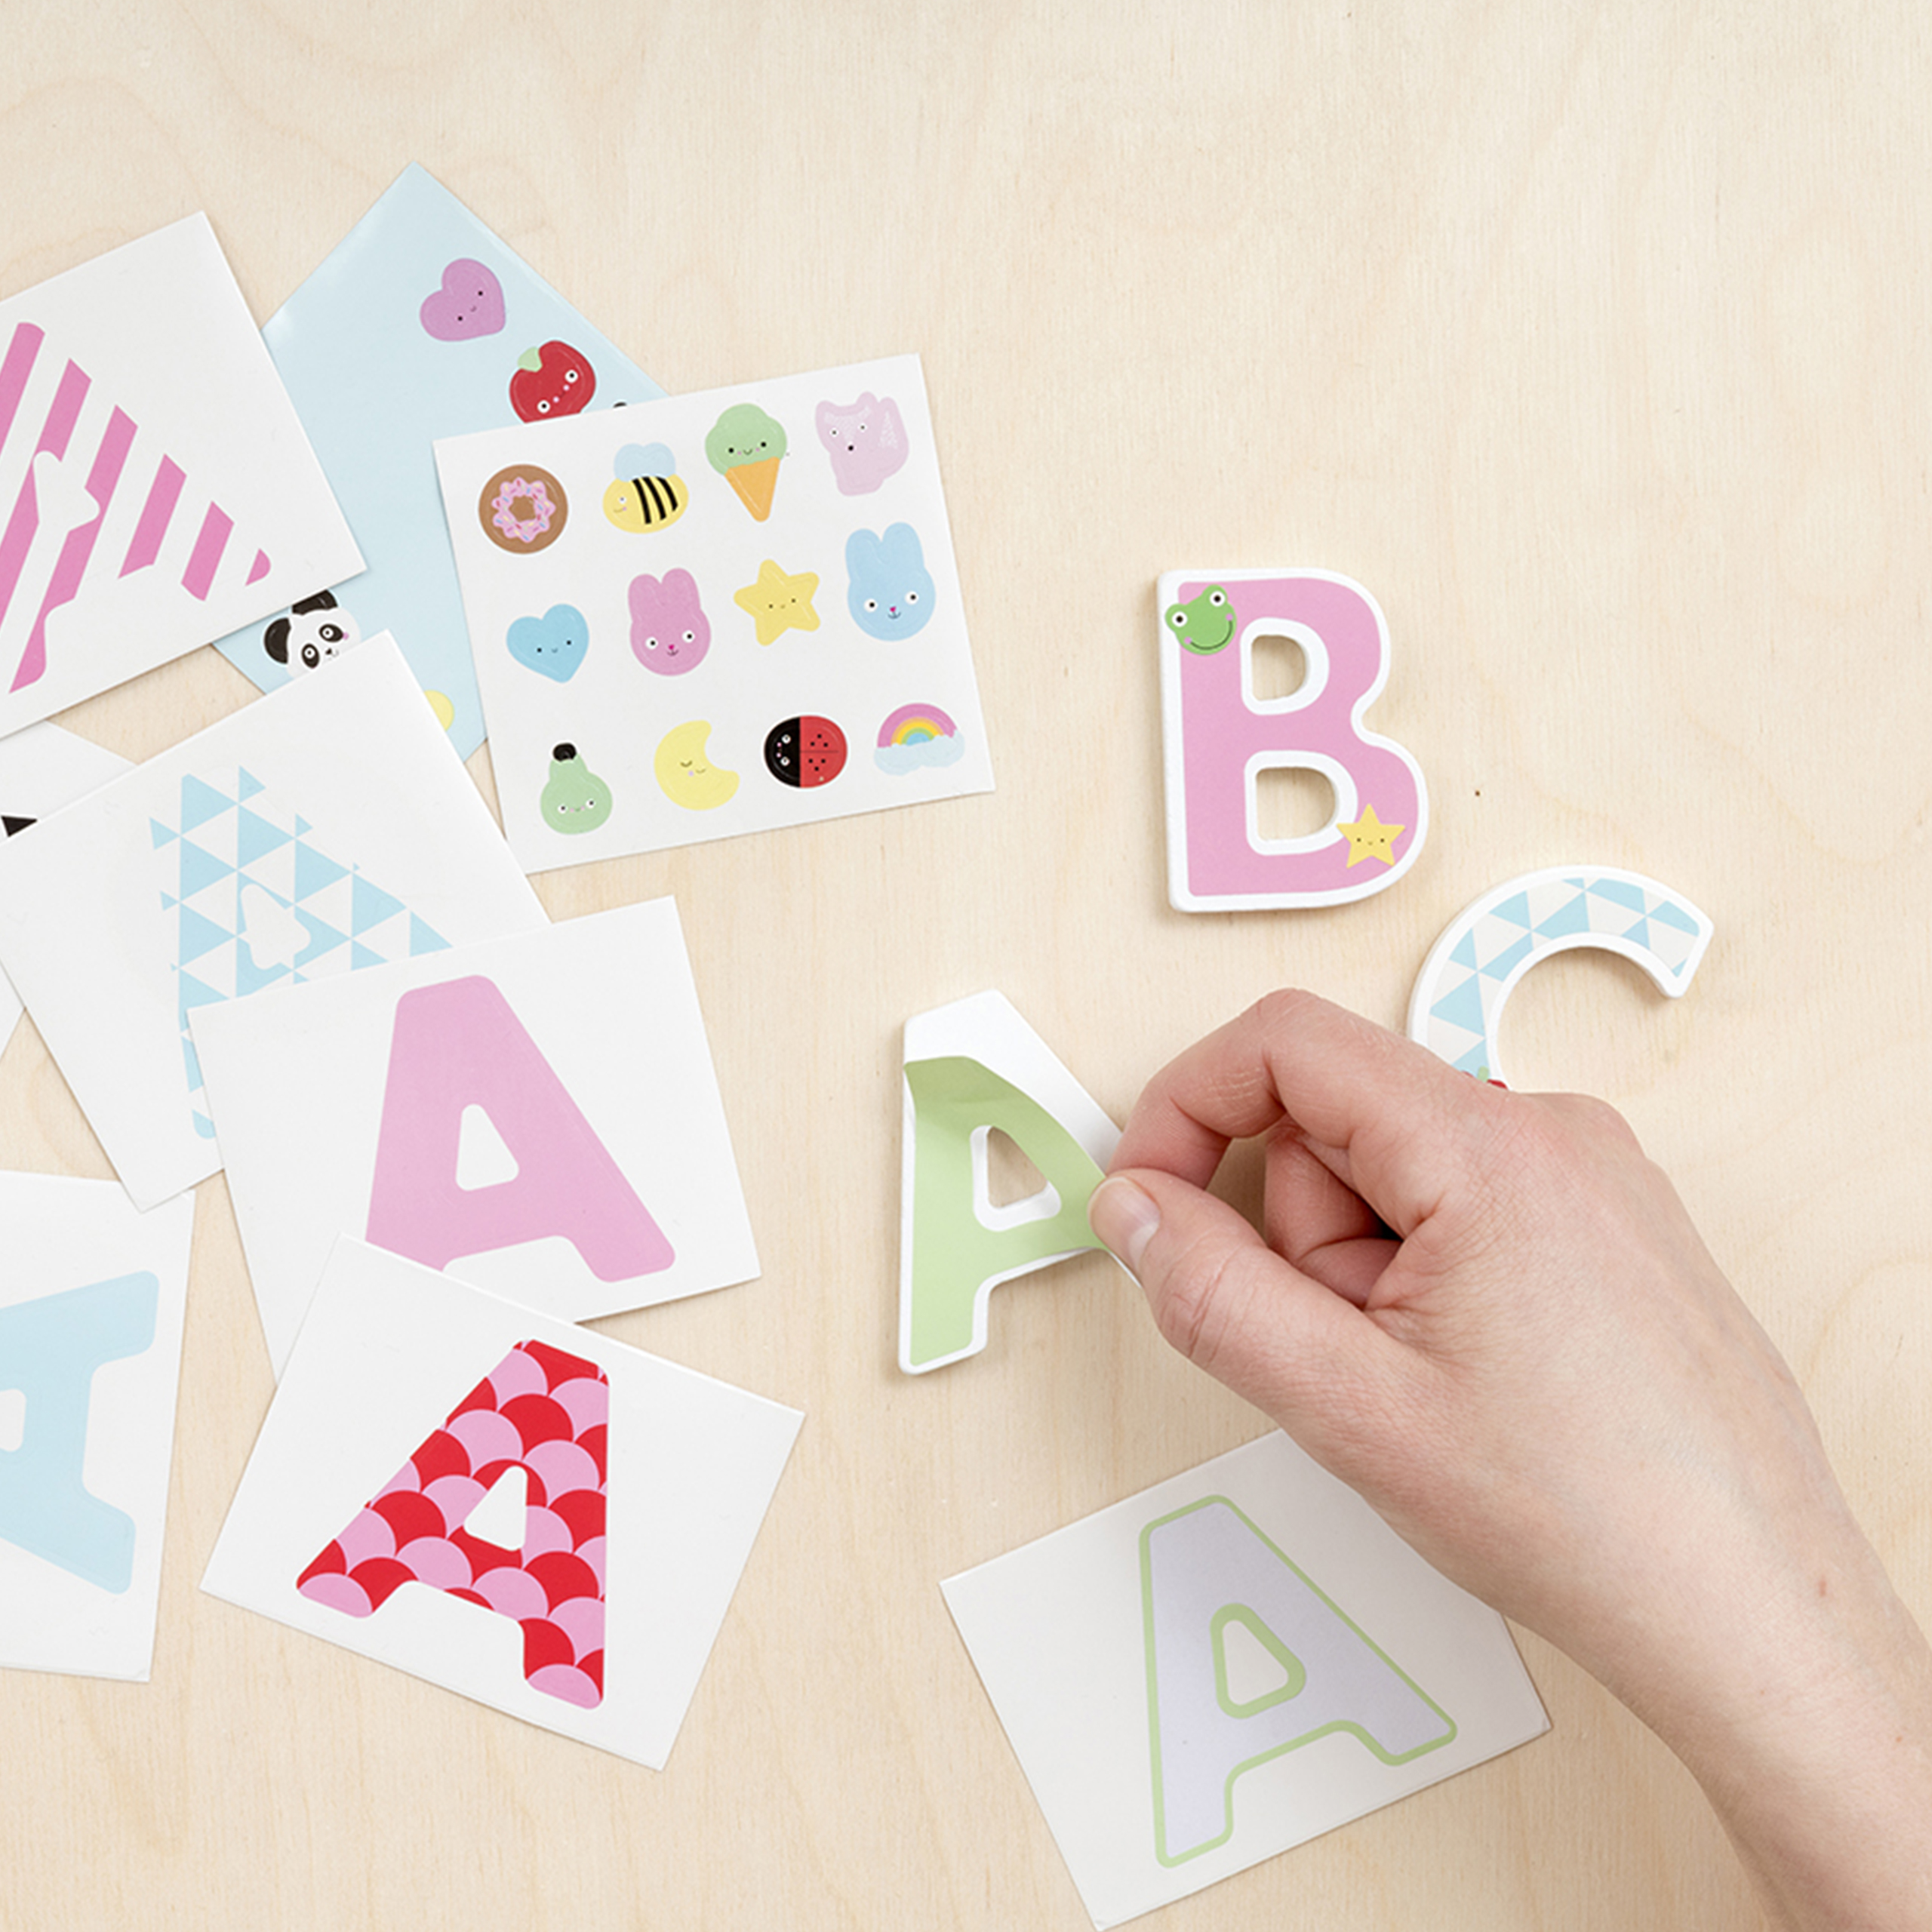 Buchstaben & Ziffern micki b – buchstabe & sticker mit verschiedenen mustern